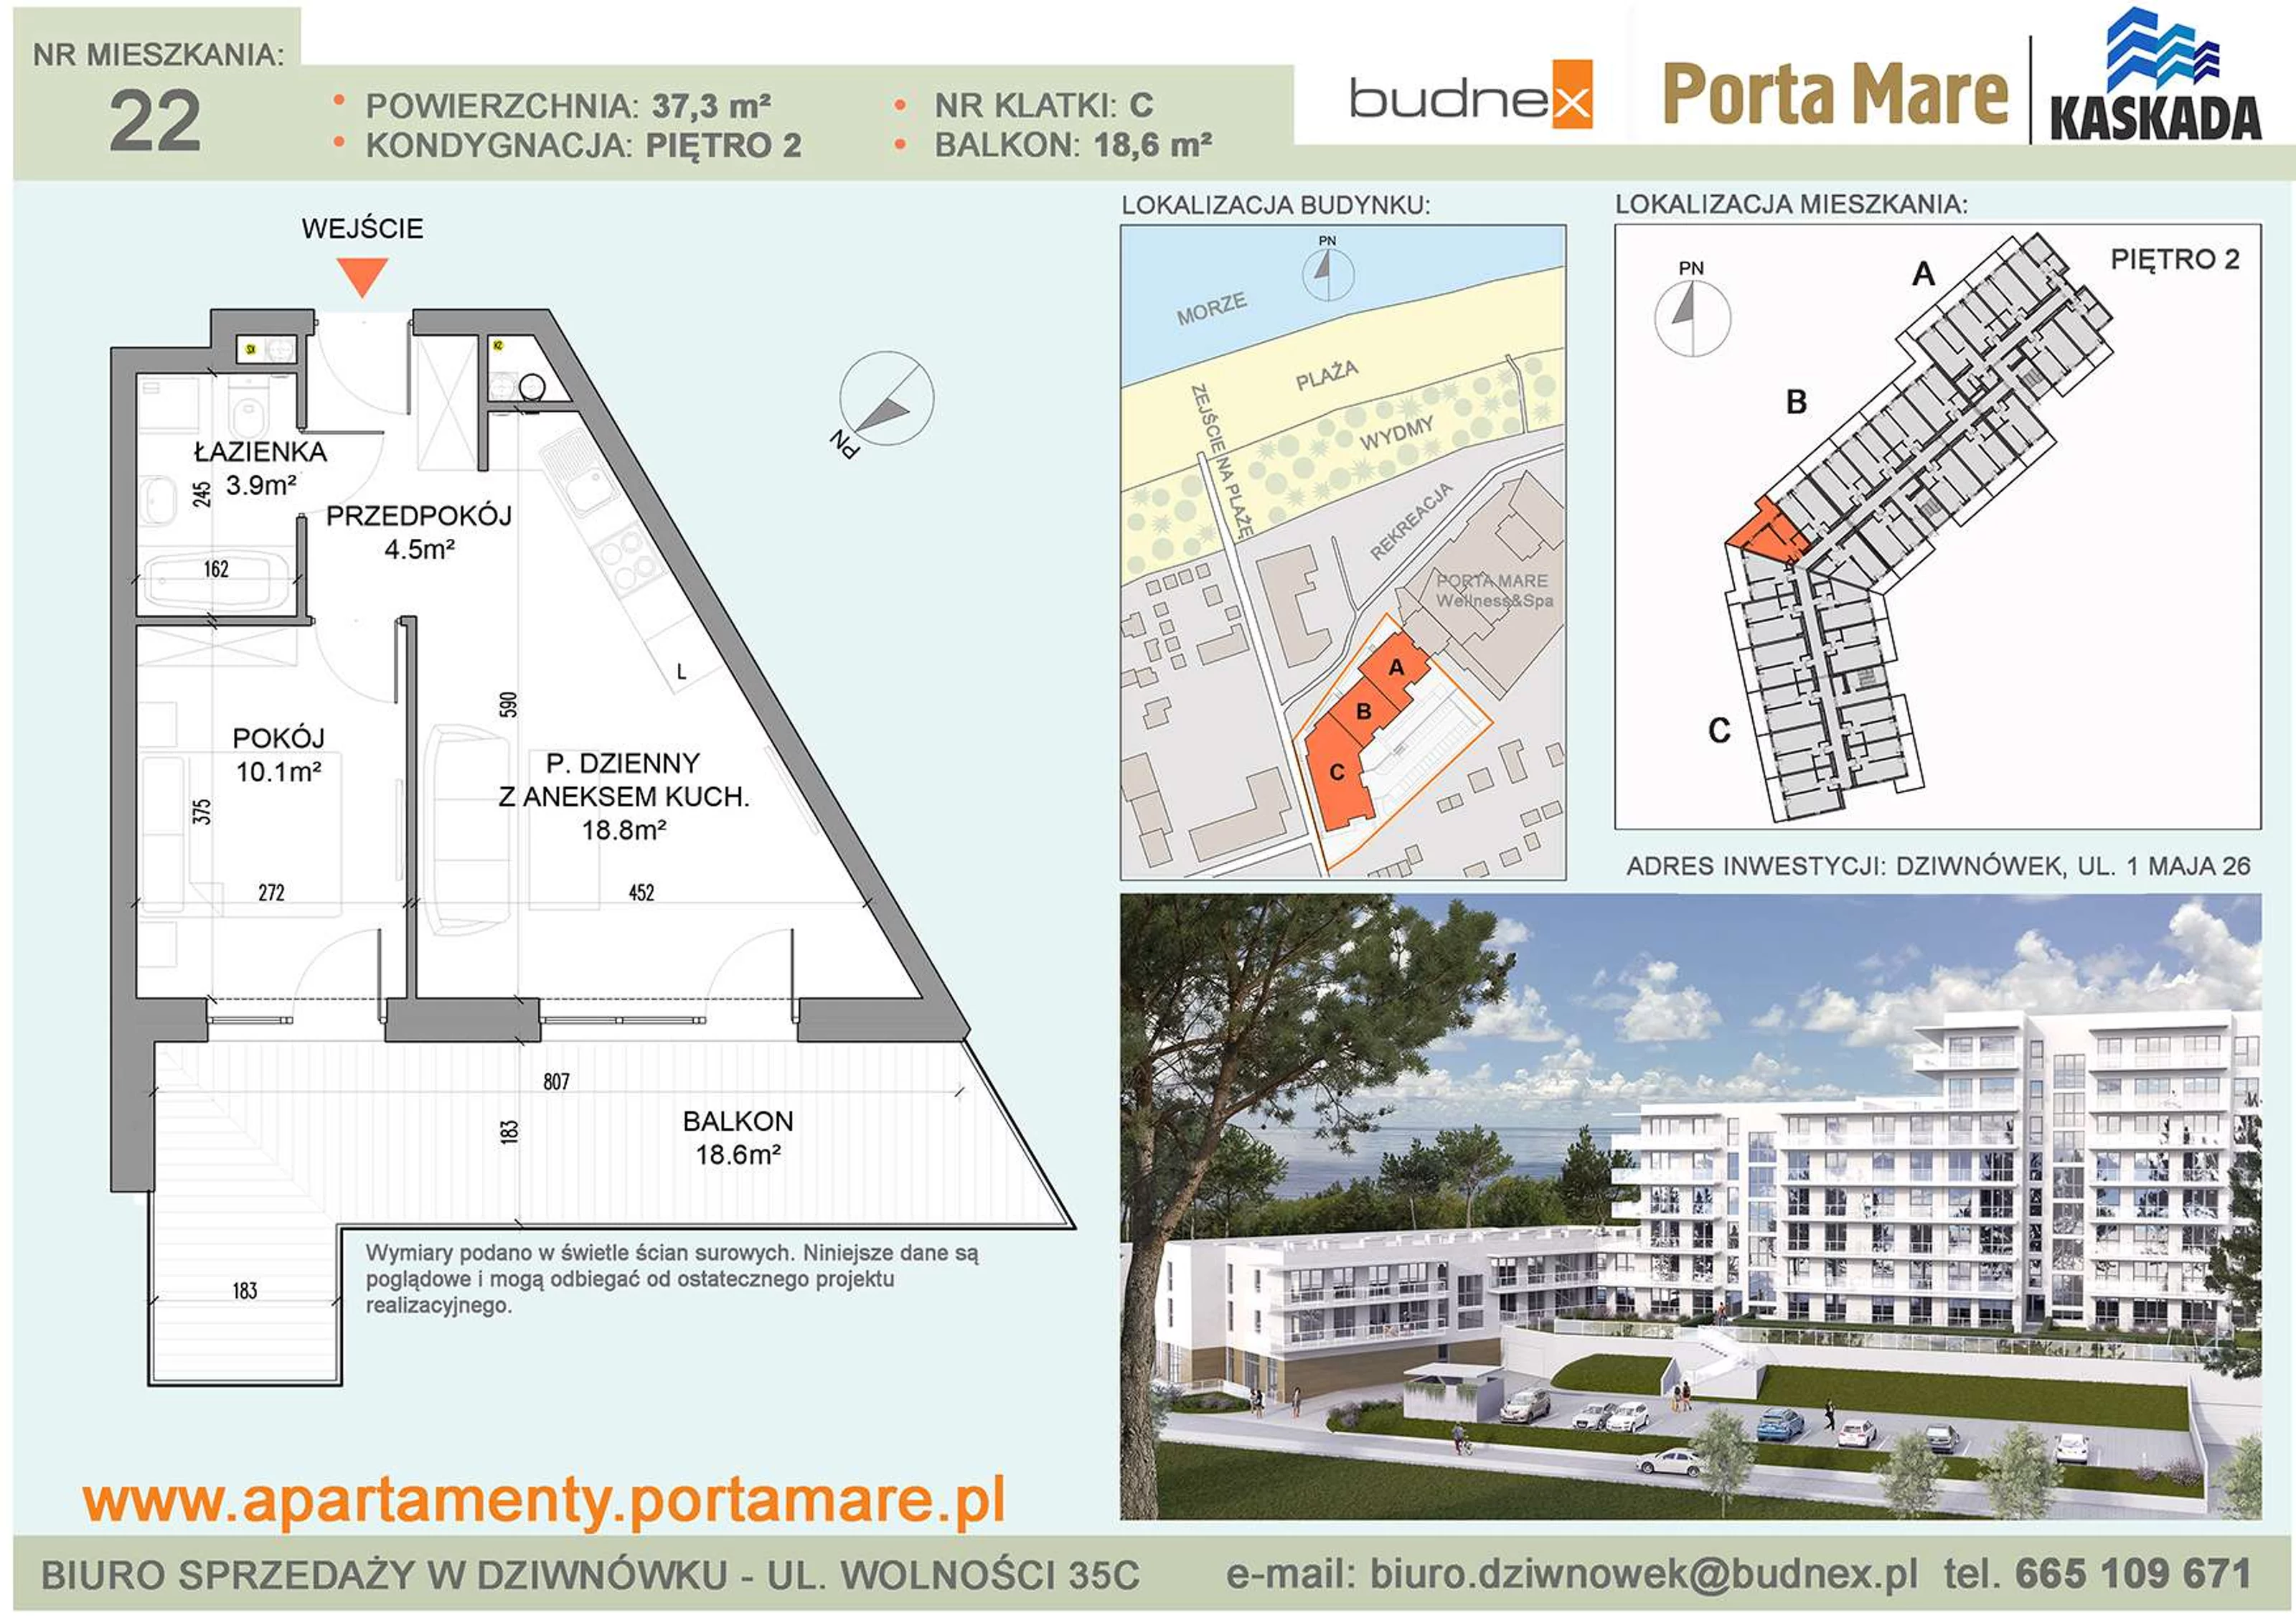 Apartament 37,30 m², piętro 2, oferta nr C/M22, Porta Mare Kaskada, Dziwnówek, ul. 1 Maja 26